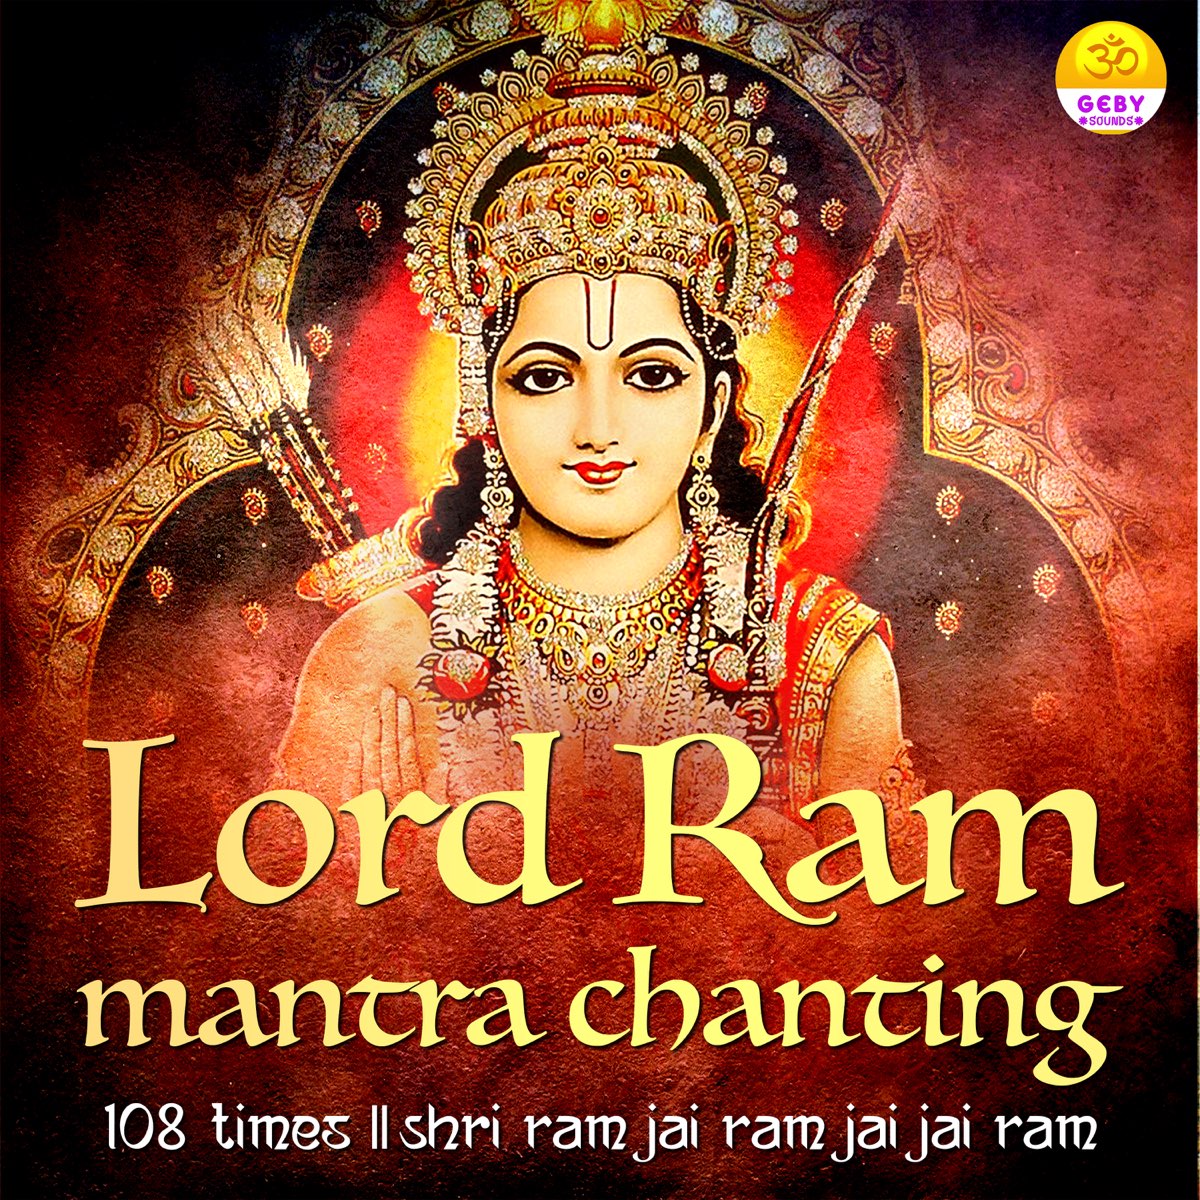 Lord Ram Mantra Chanting - 108 Times - Shri Ram Jai Ram Jai Jai Ram by  Priyank on Apple Music